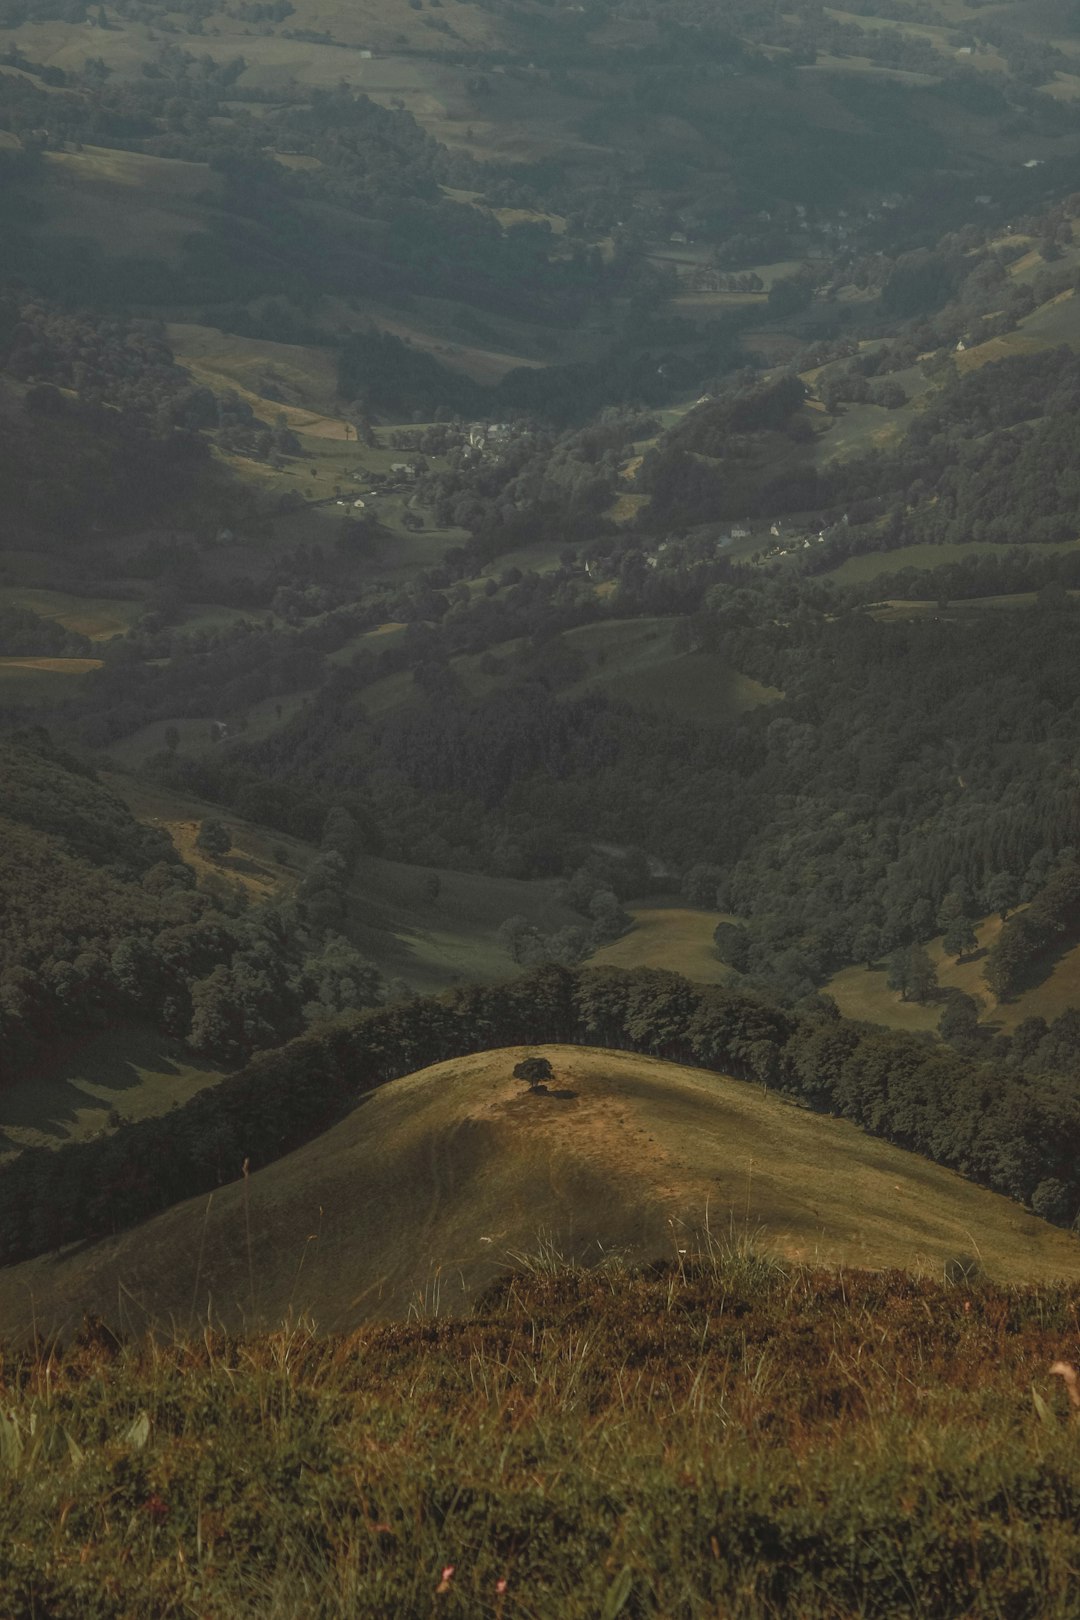 Hill photo spot Parc naturel régional des Volcans d'Auvergne France